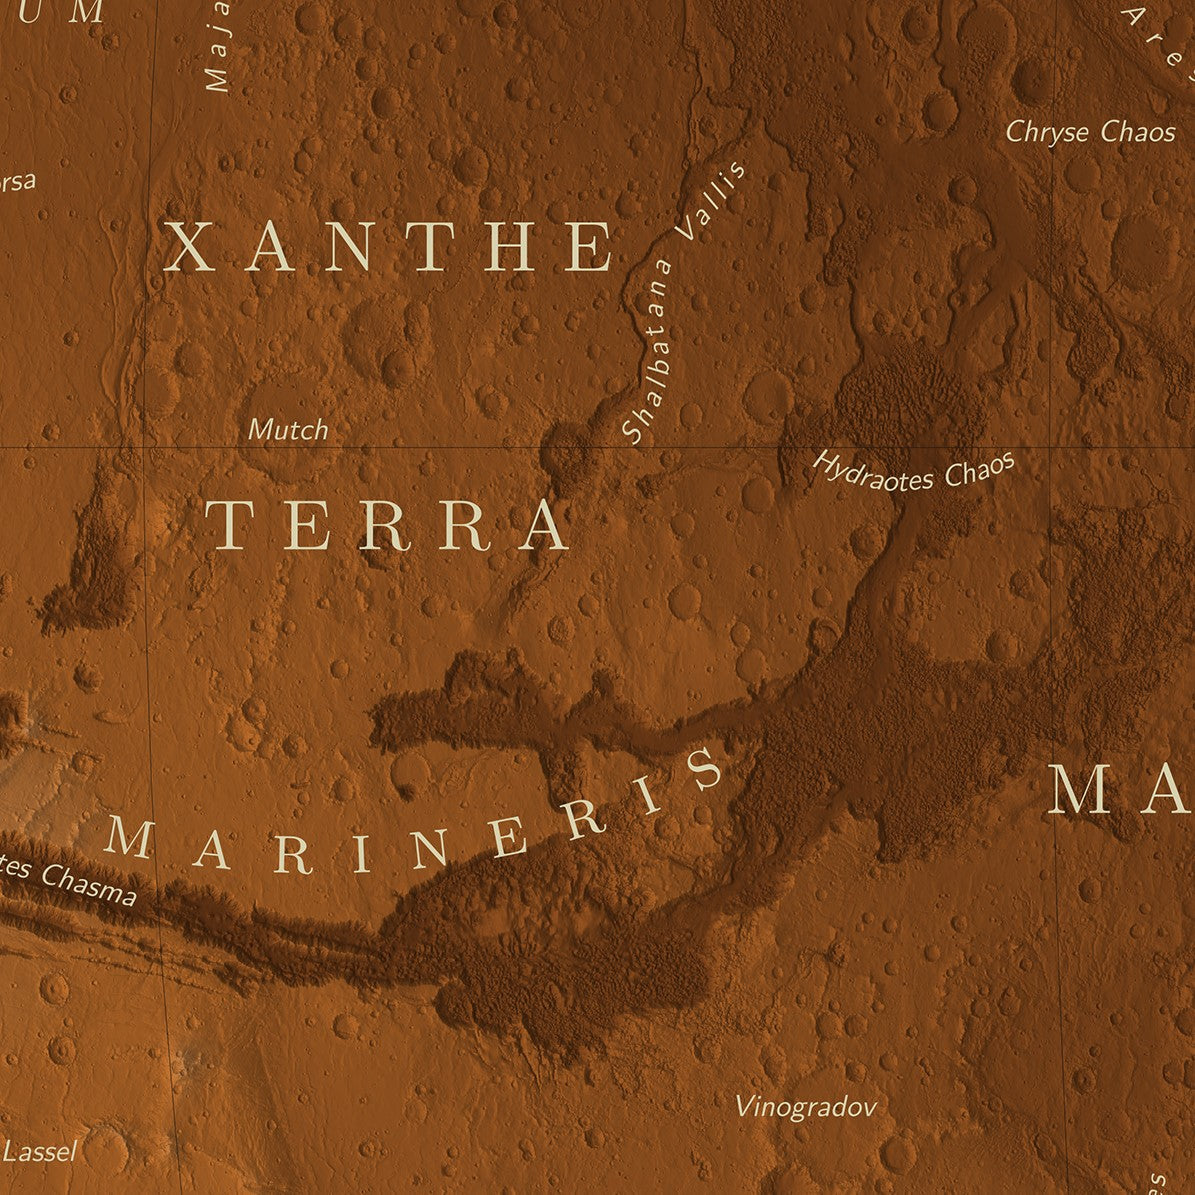 La carte de la planète Mars Poster